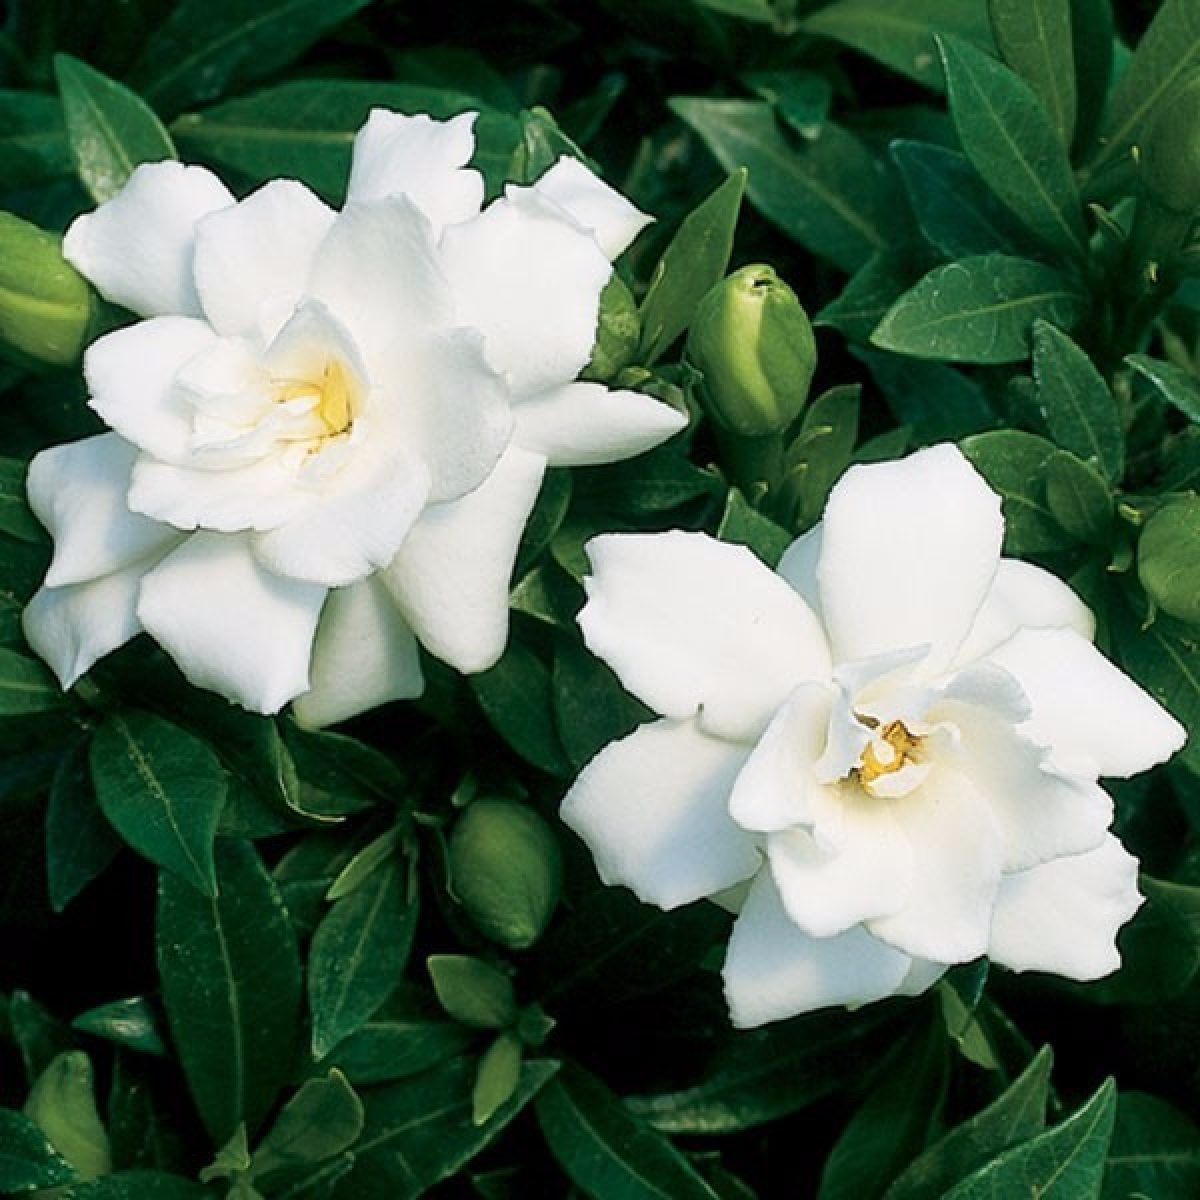 Gardênia - Características da flor, Significado e Como cultivar